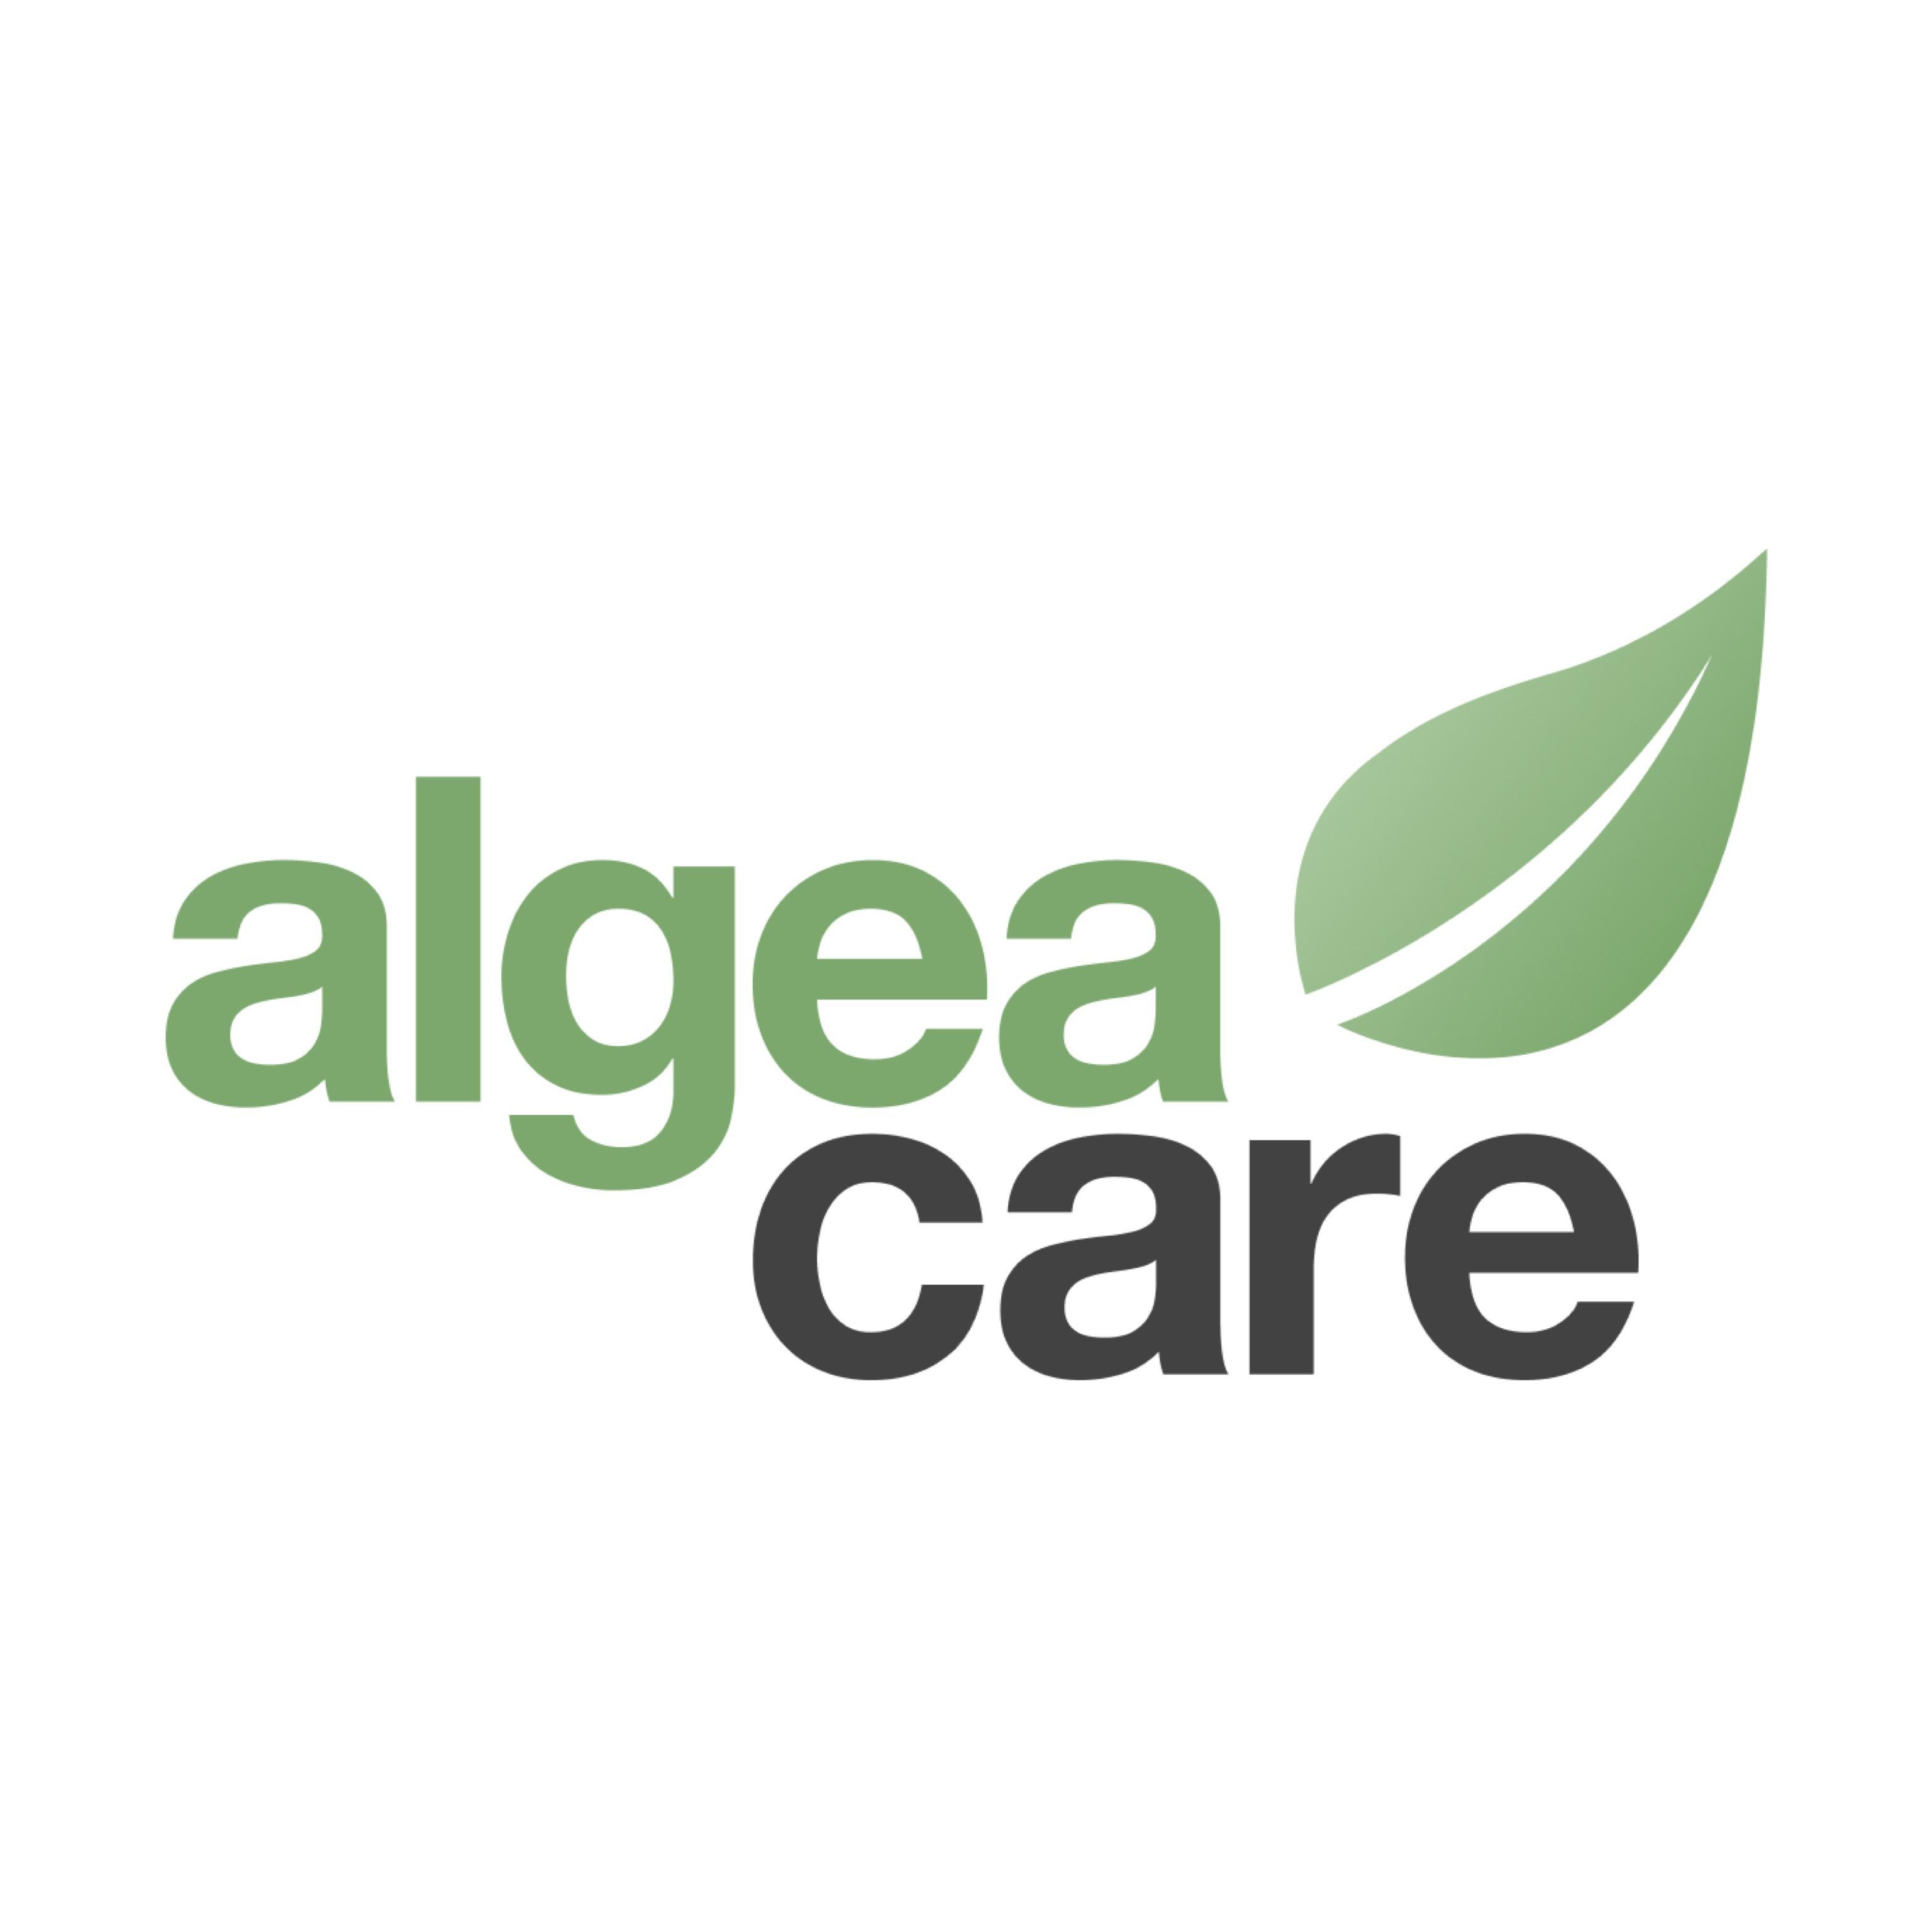 Algea Care Therapiezentrum Nürnberg Logo